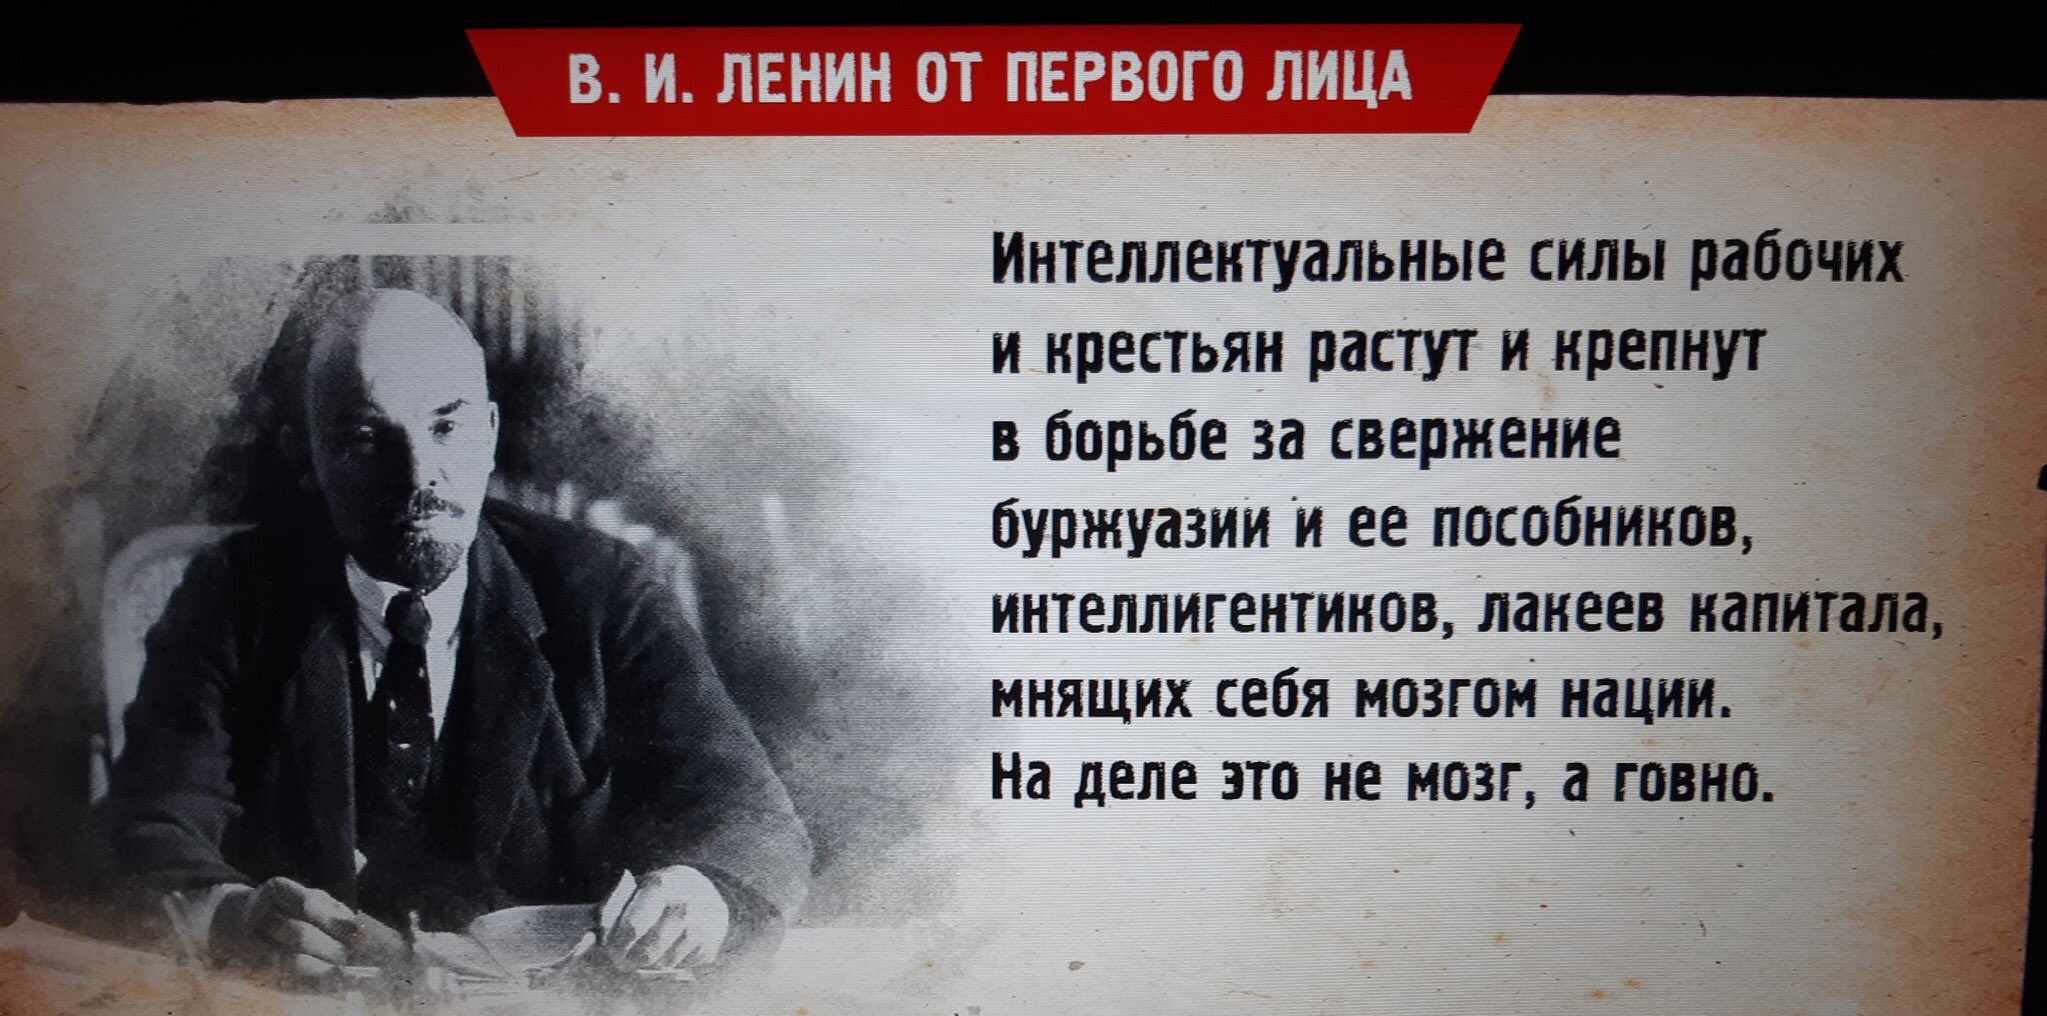 Говно нации — КПРФ Москва